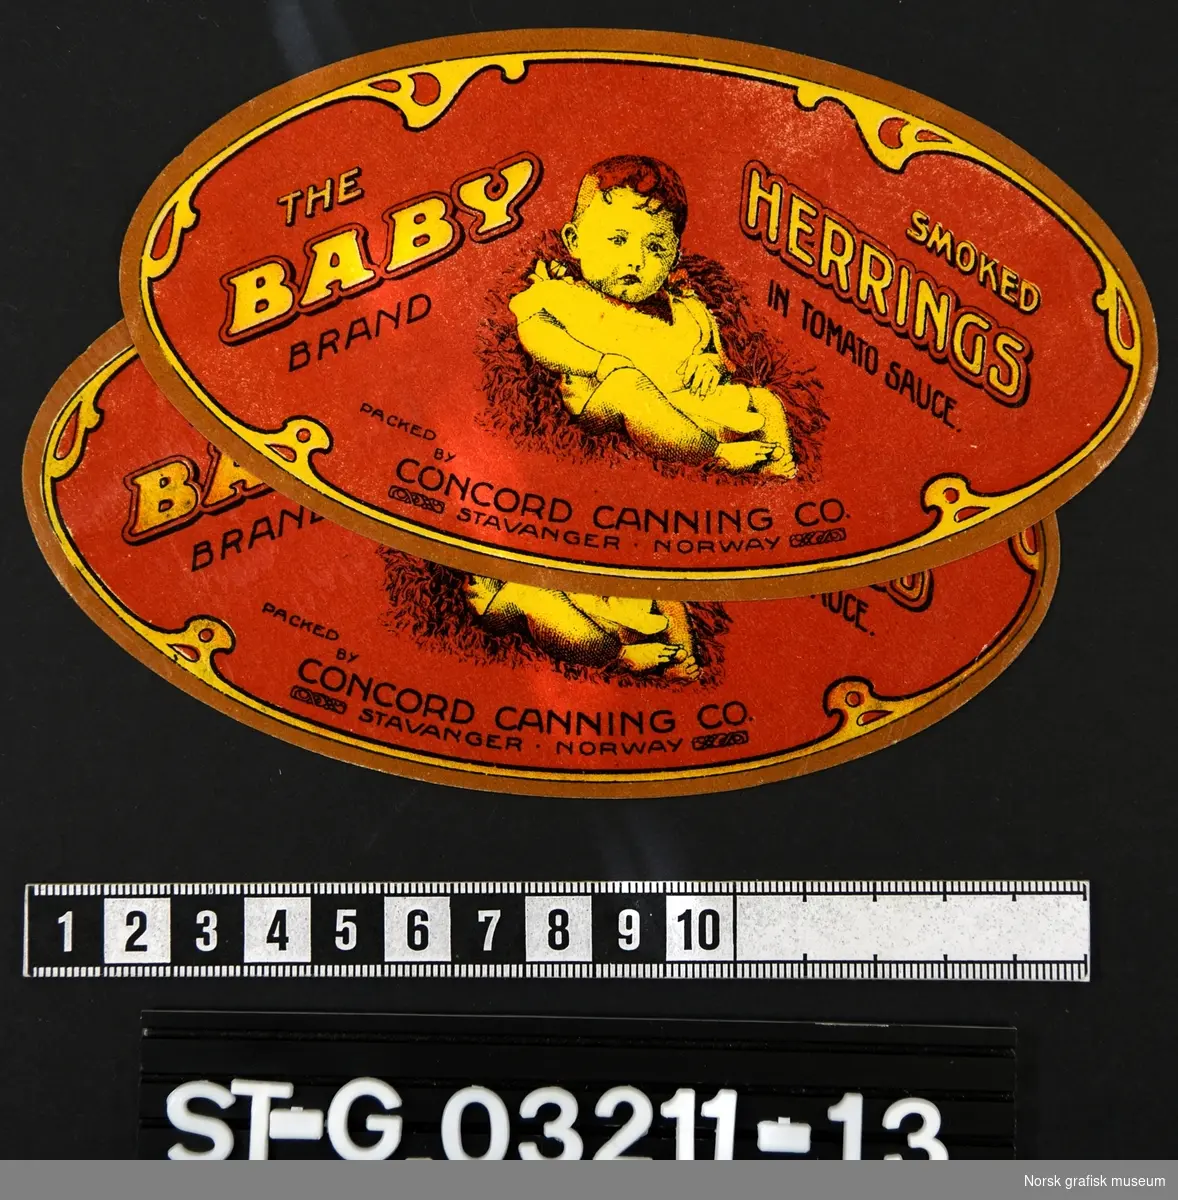 To ovale etiketter i rød, brun og gul, med en baby som hovedmotiv. 

"Smoked herrings in tomato sauce"